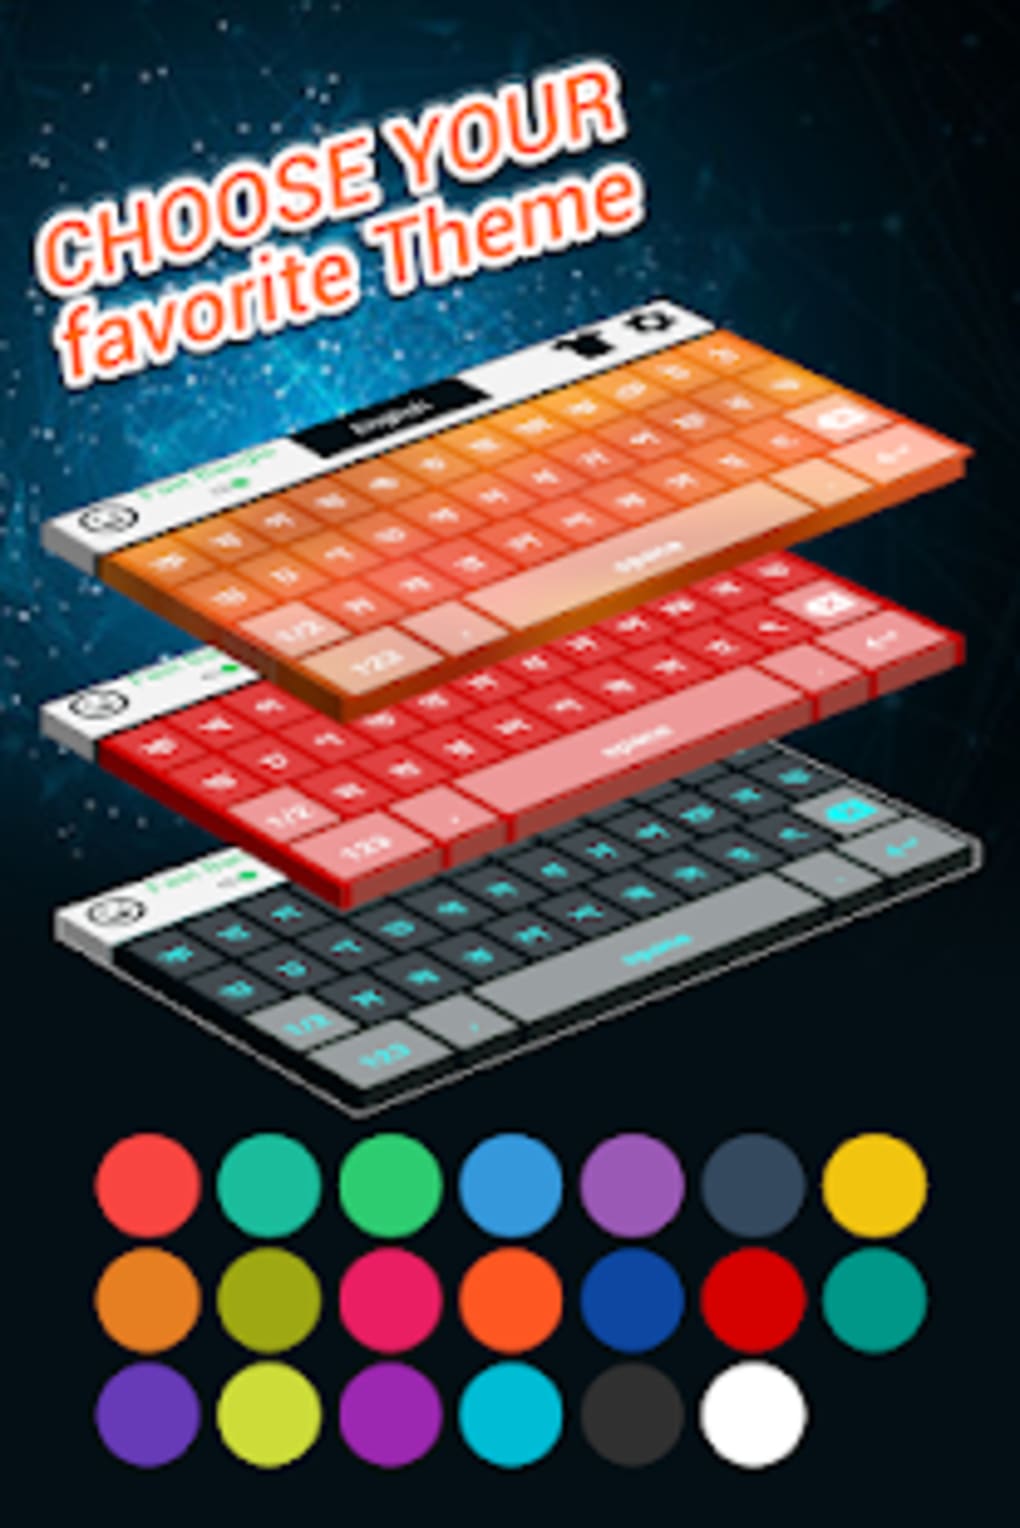 Bangla English Keyboard- Bengali keyboard typing APK for Android - Download